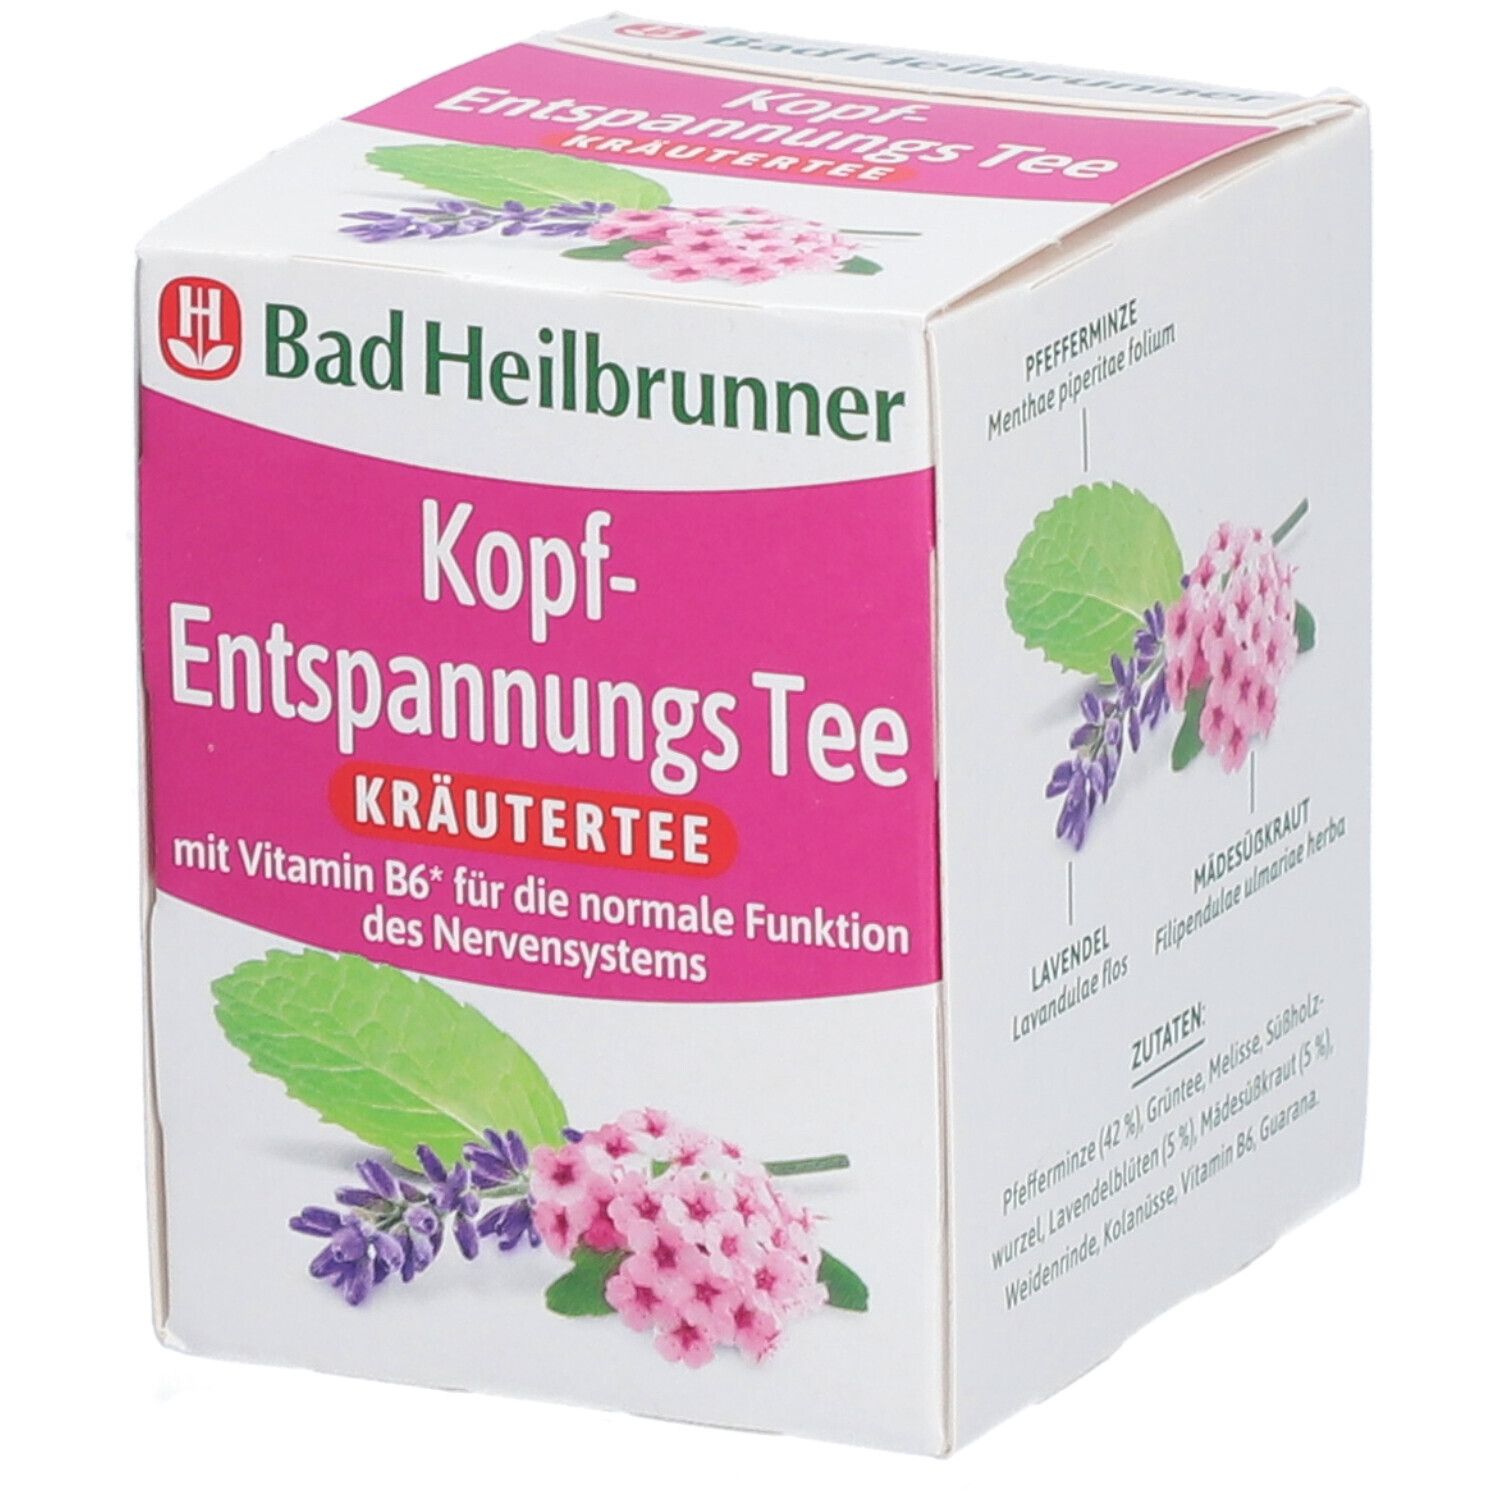 Image of Bad Heilbrunner® Kopf-Entspannungs Tee